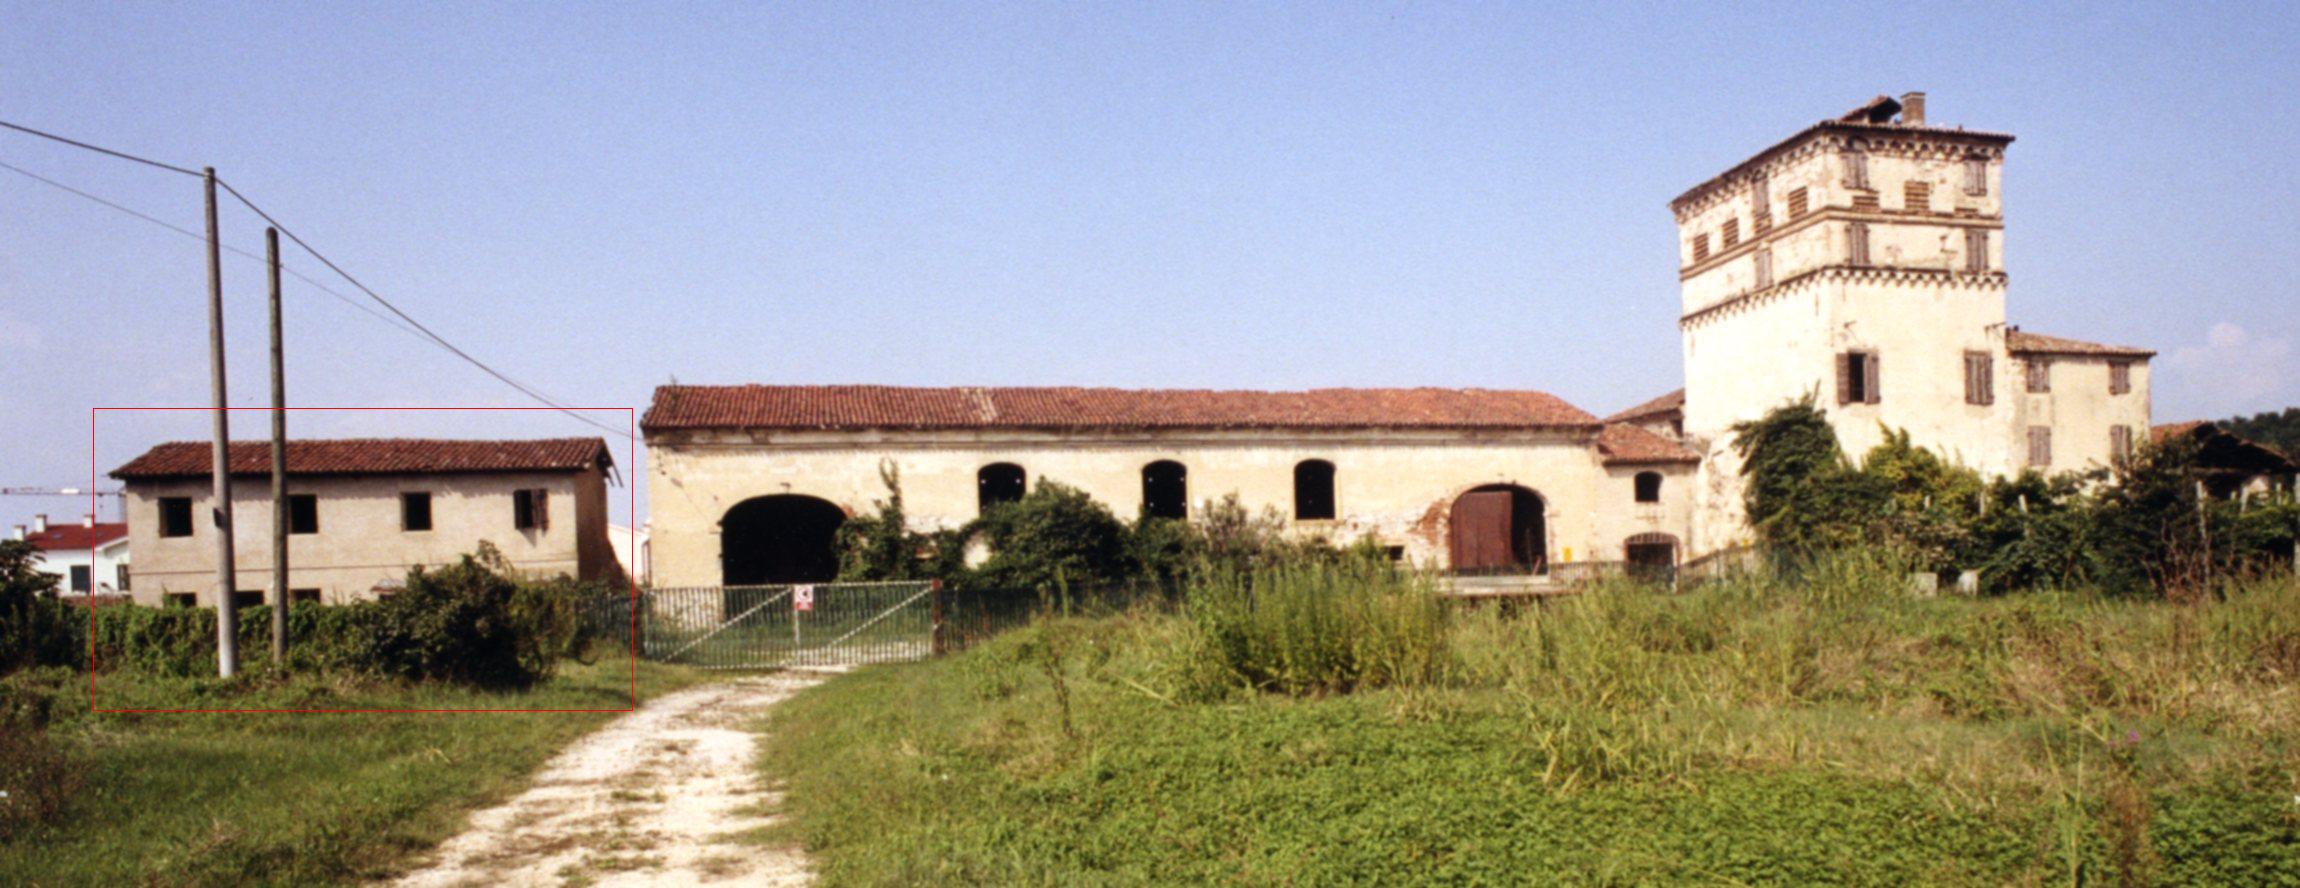 Casa dei mezzadri di Villa da Rio - Rubini - Canal (casa, dominicale) - Rovolon (PD) 